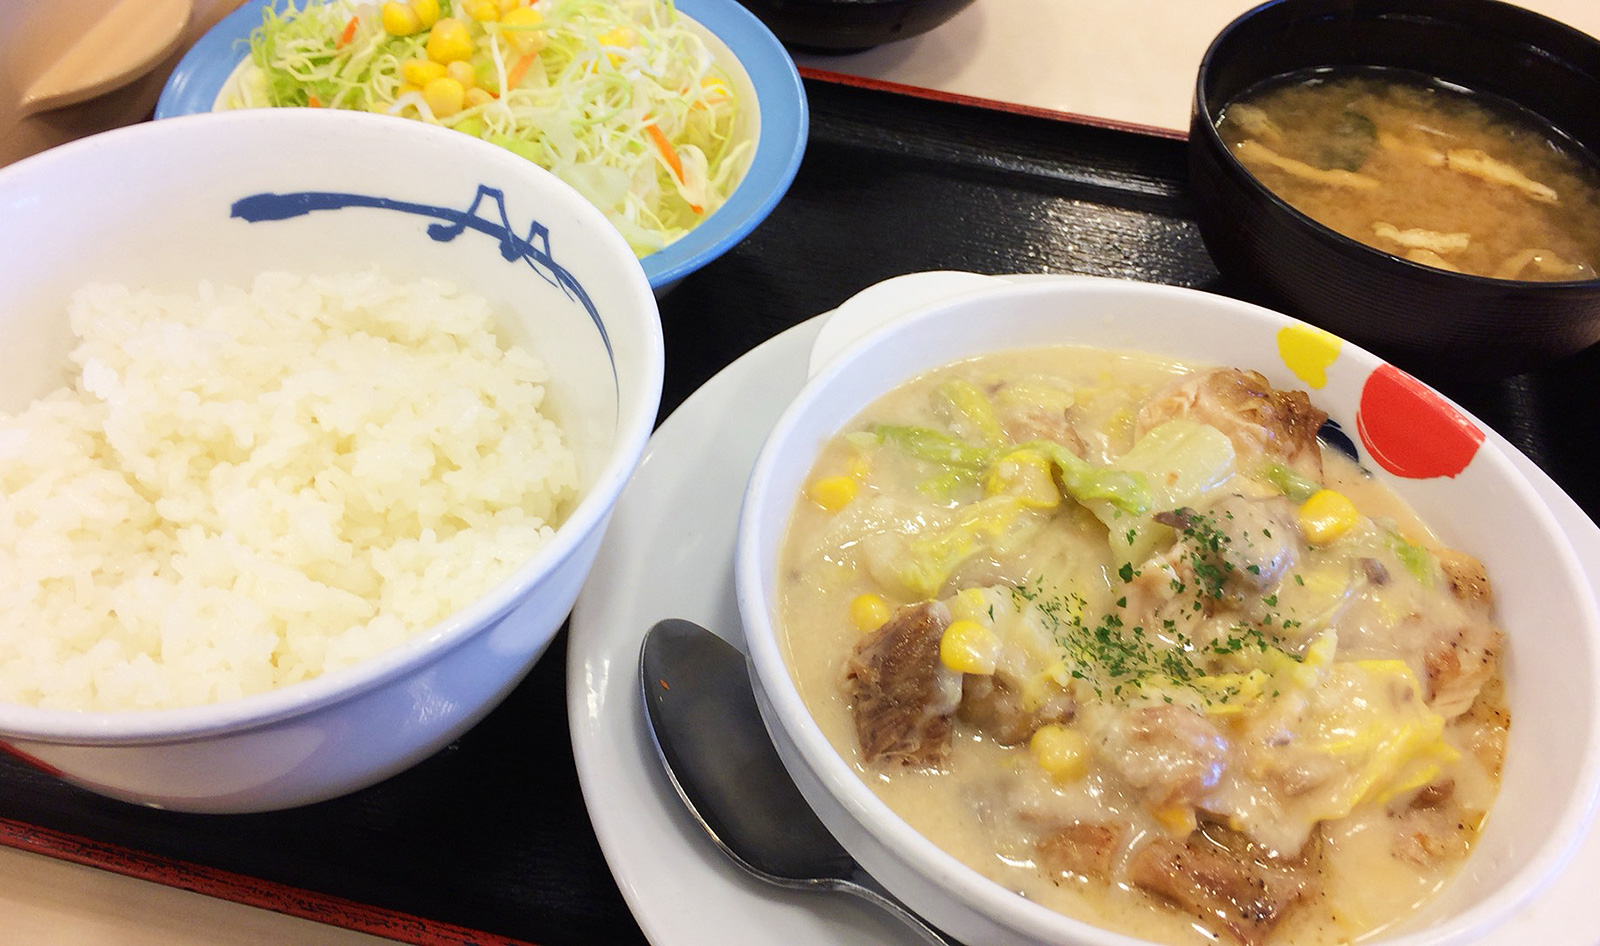 松屋亀島店の鶏と白菜のクリームシチュー定食 名古屋市中村区亀島 ひとりめし食います 名古屋のお値打ちなランチを紹介するブログ